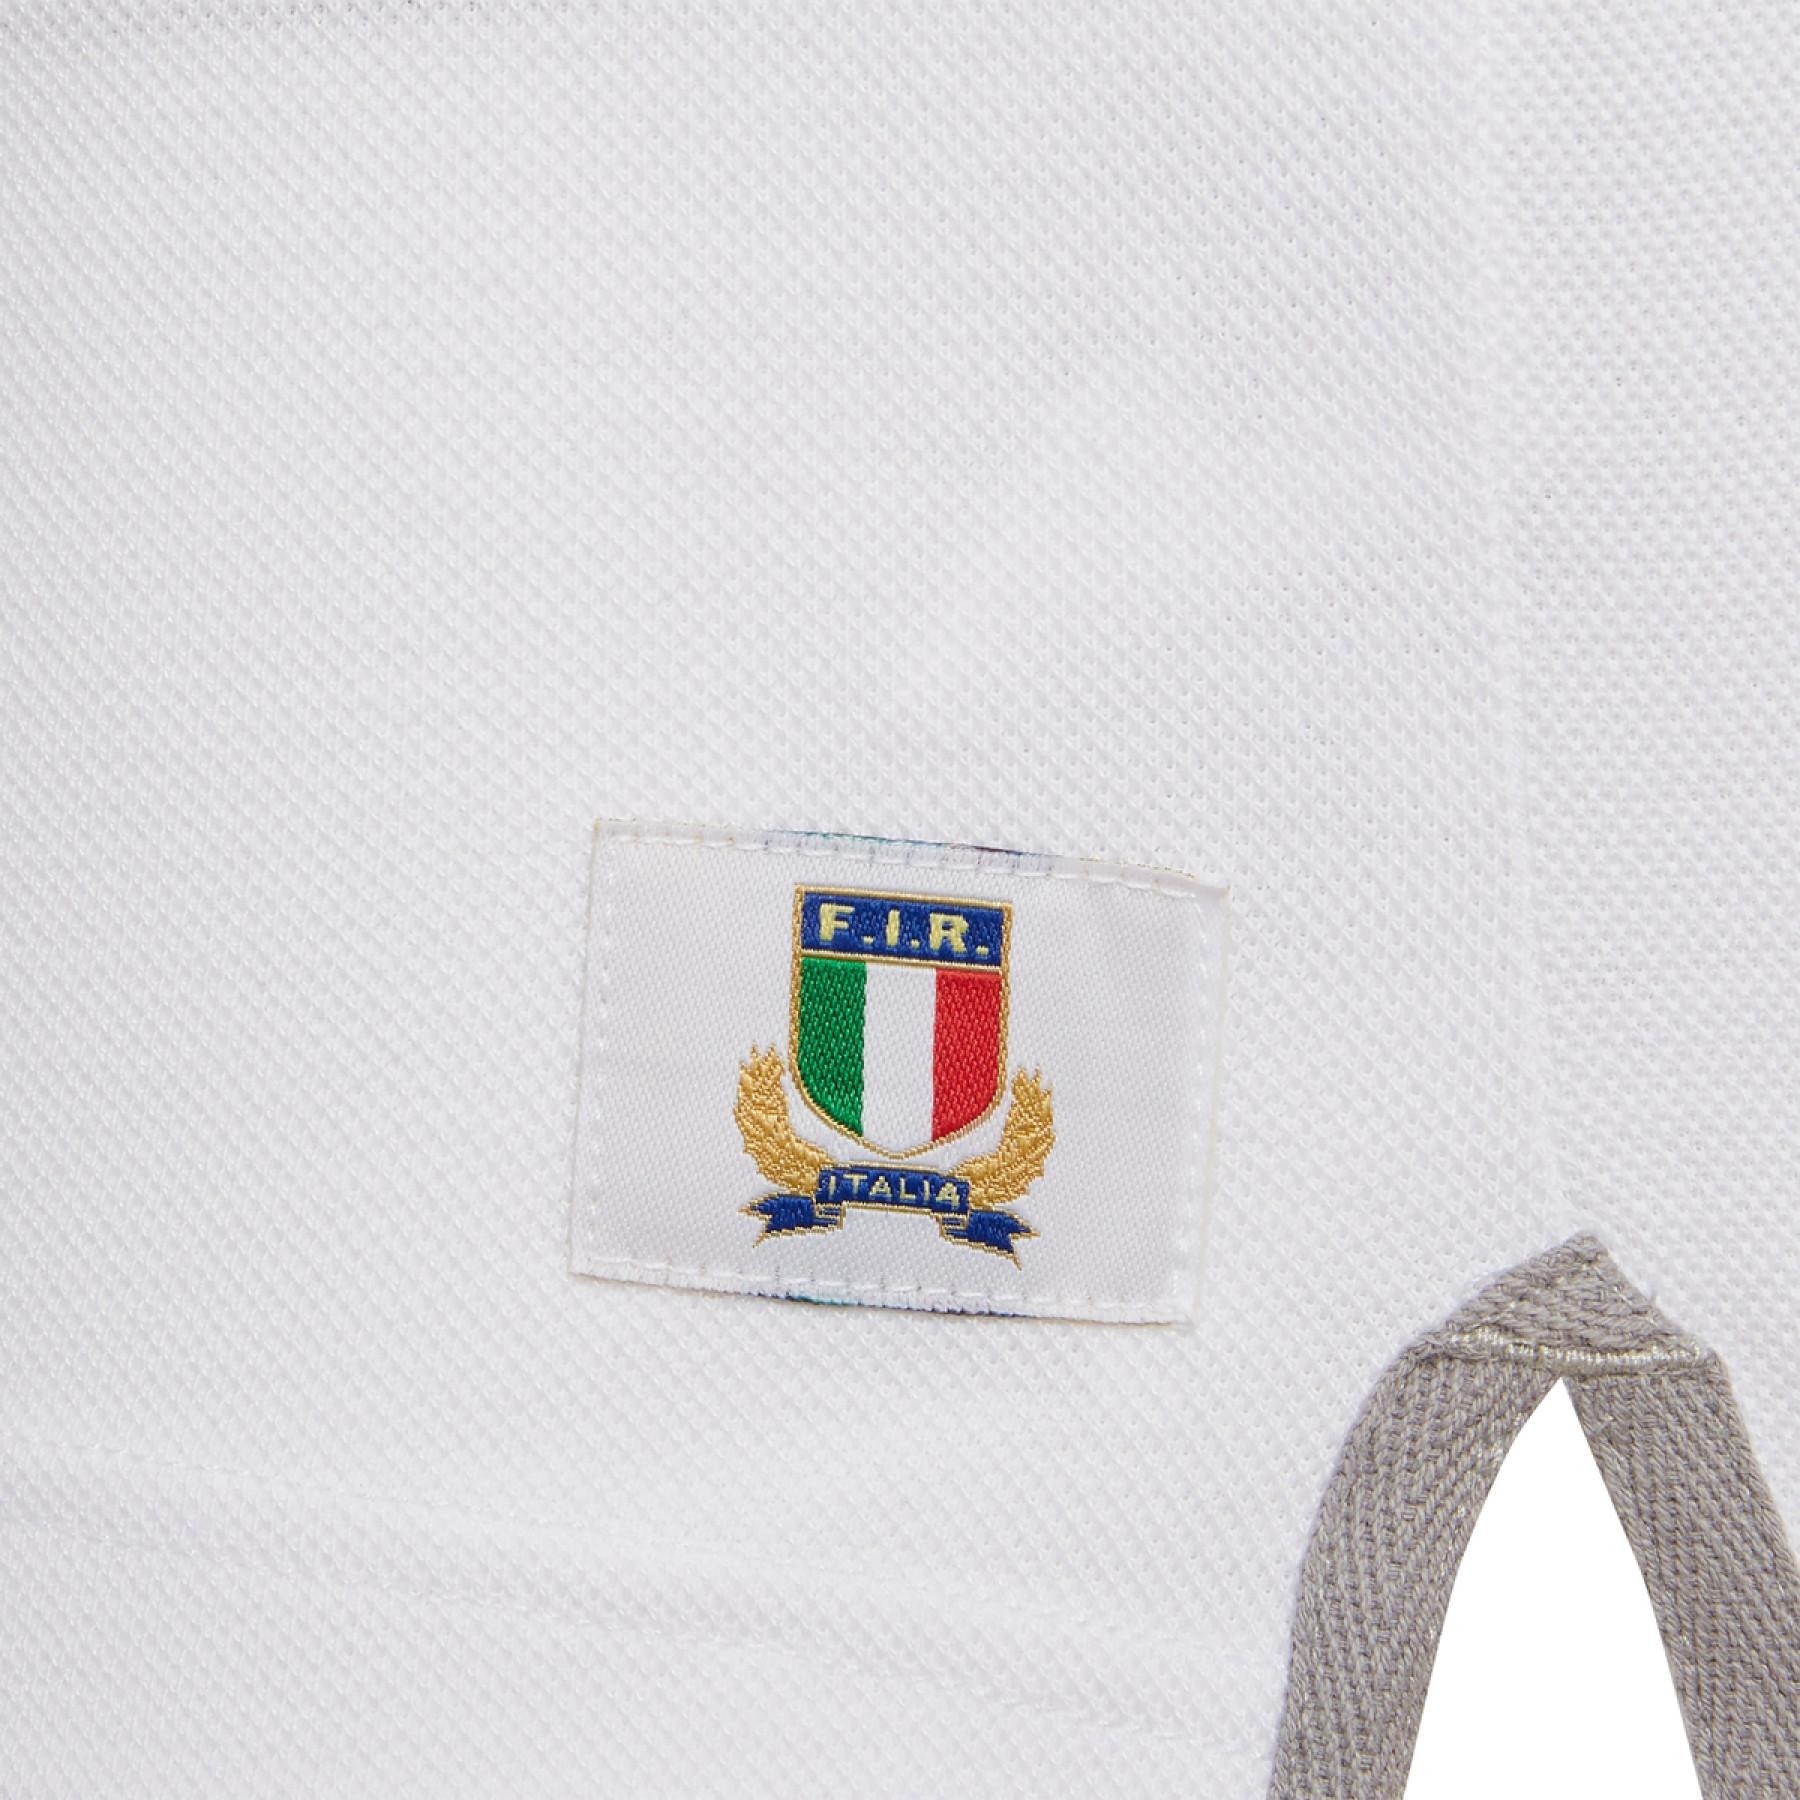 Polo rekreacyjne z bawełny piqué Italie rugby 2020/21